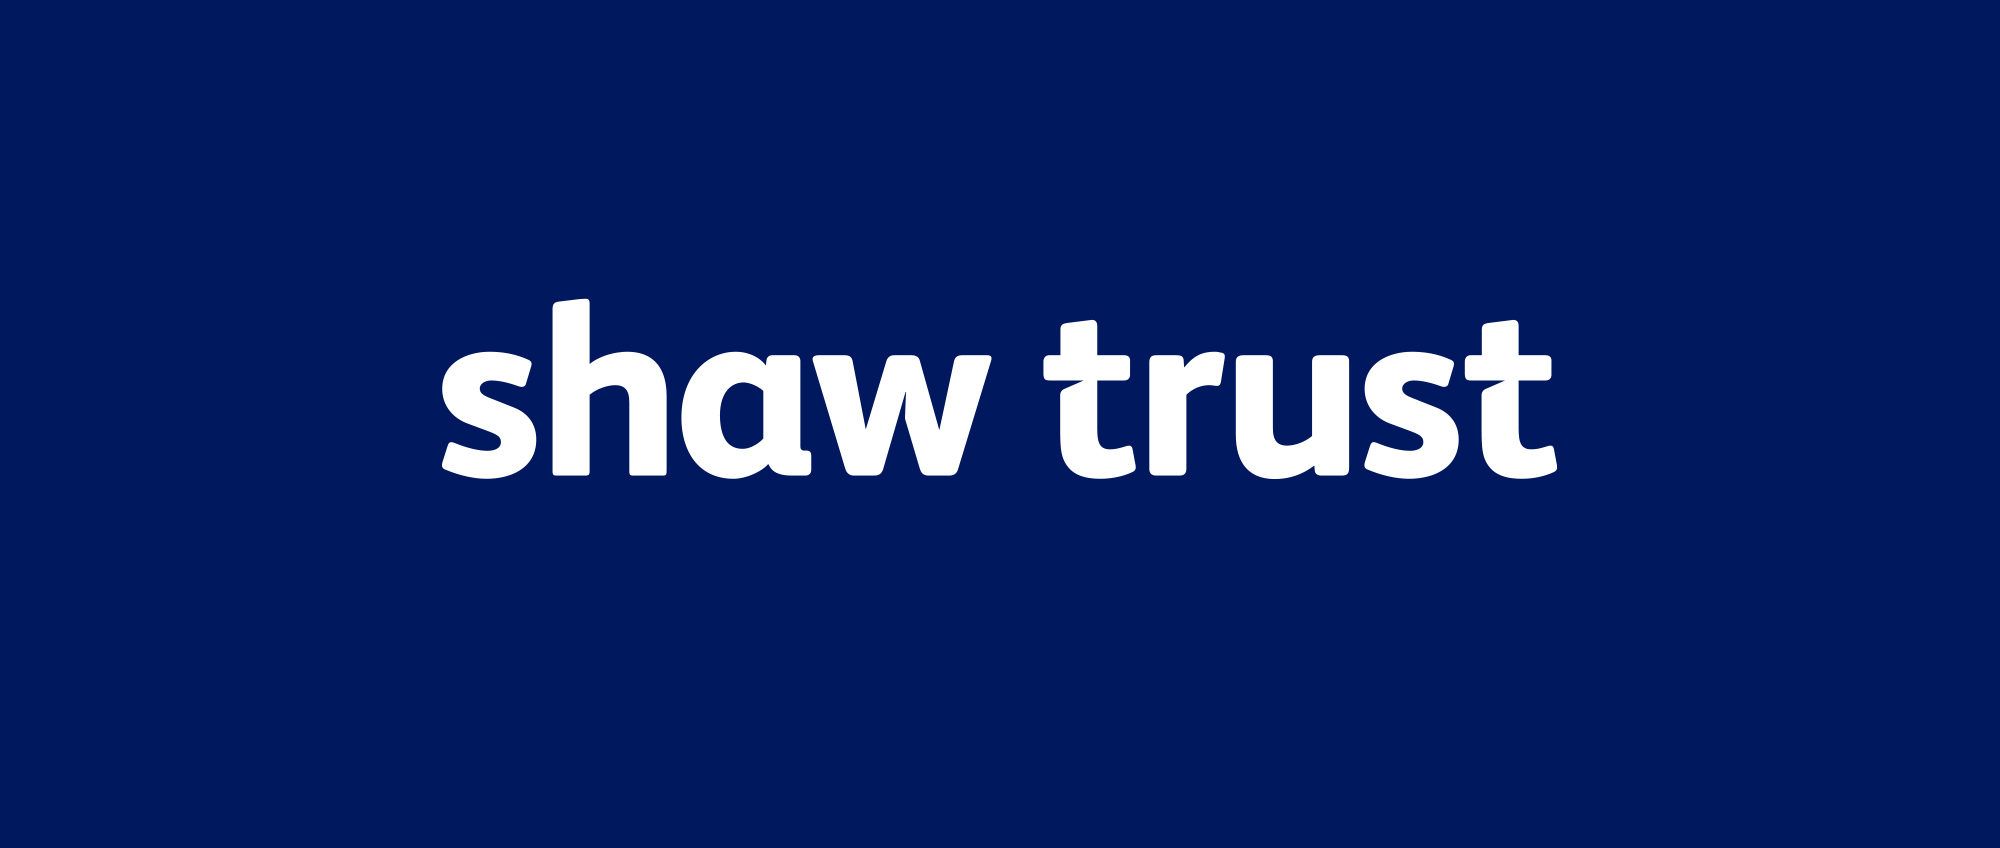 shaw trust logo